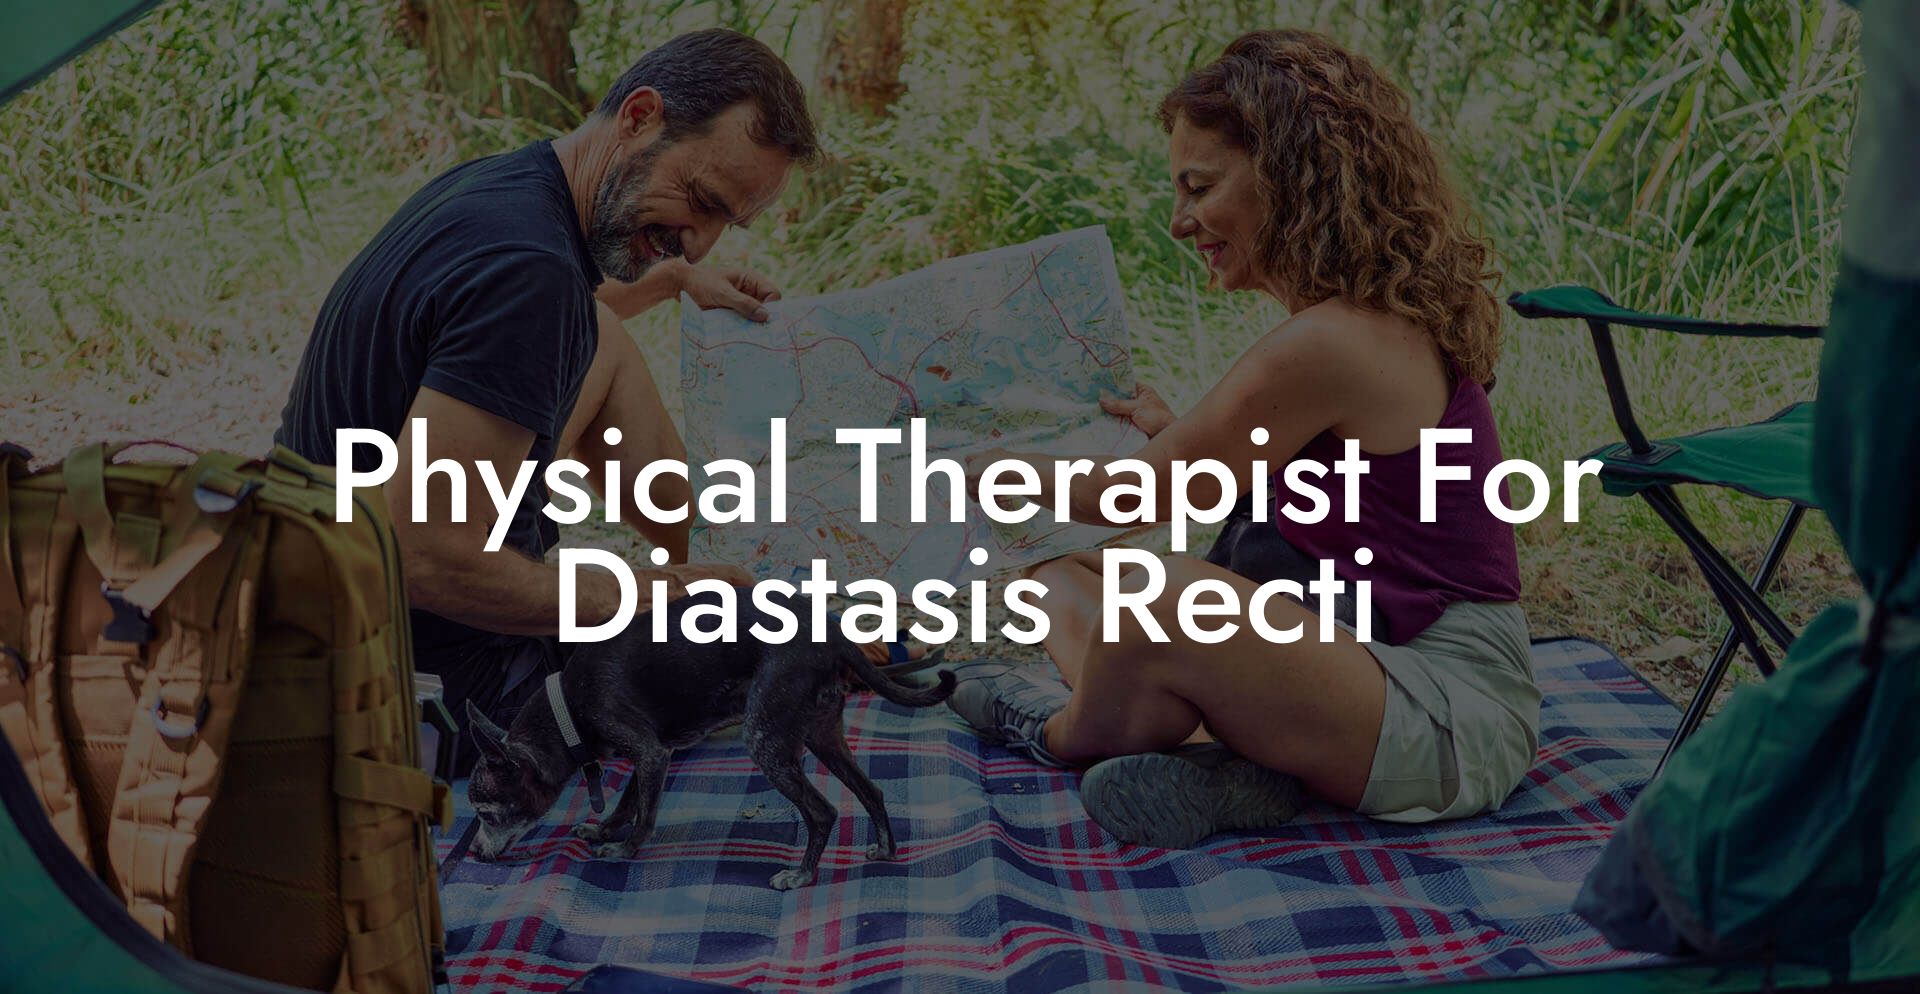 Physical Therapist For Diastasis Recti